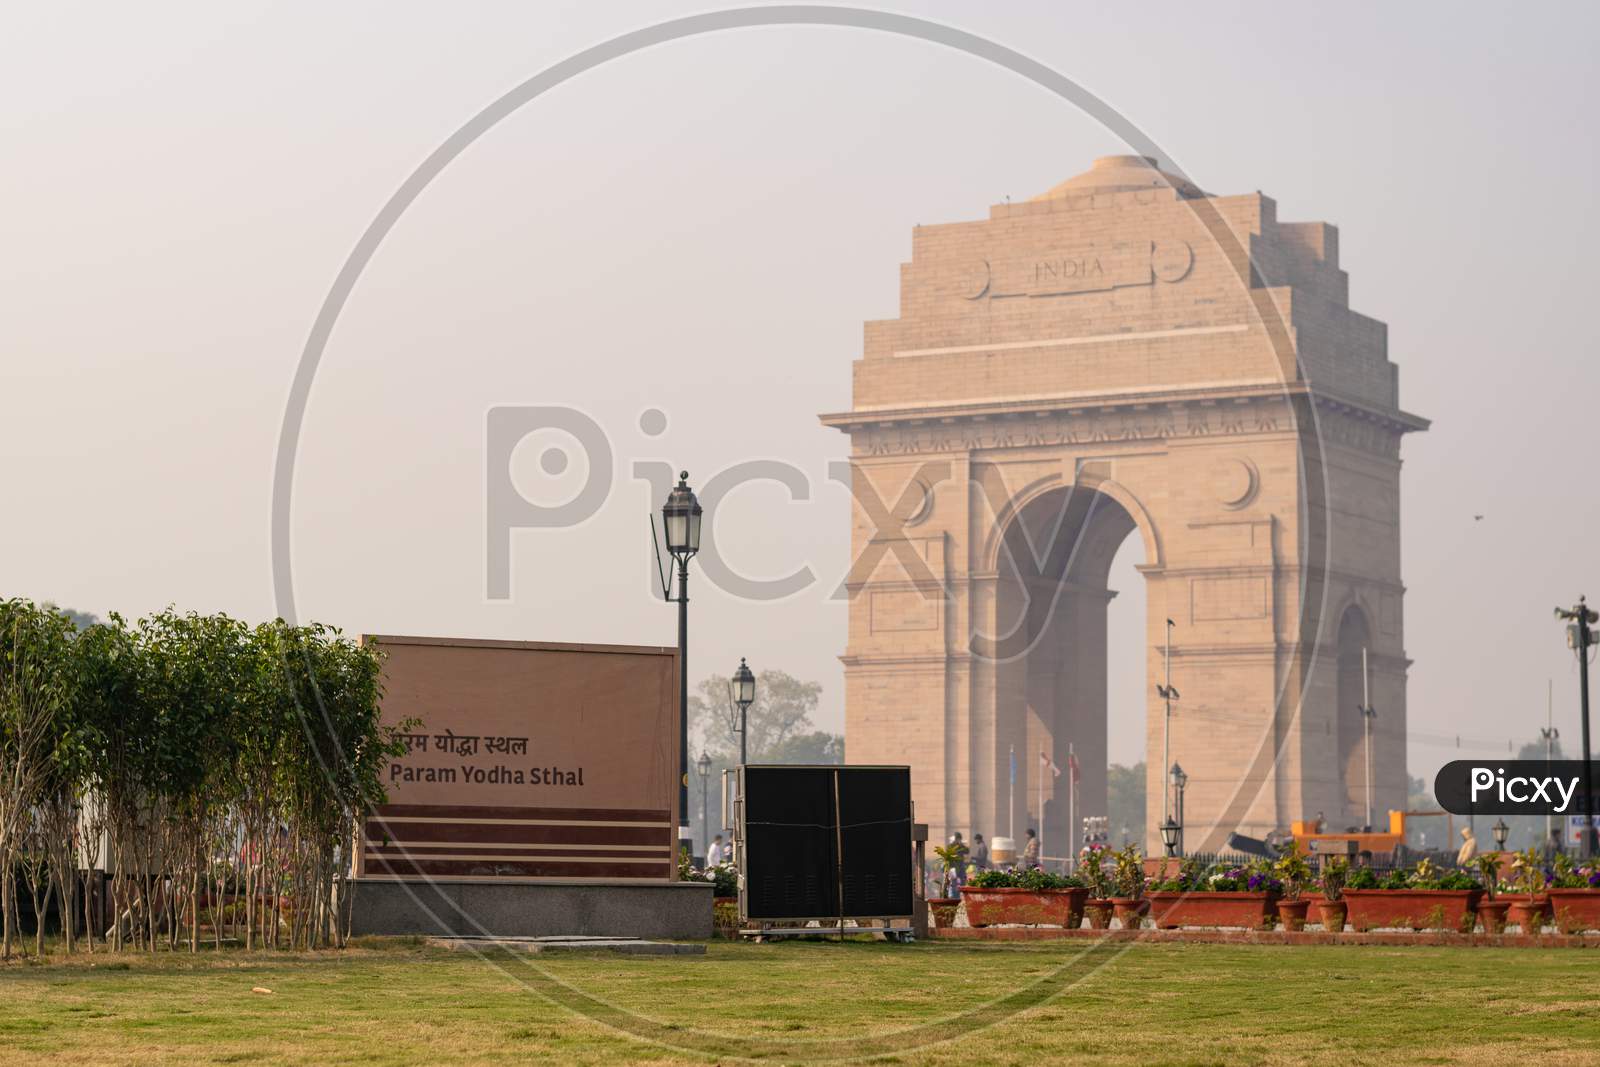 Param Yodha Sthal near India Gate